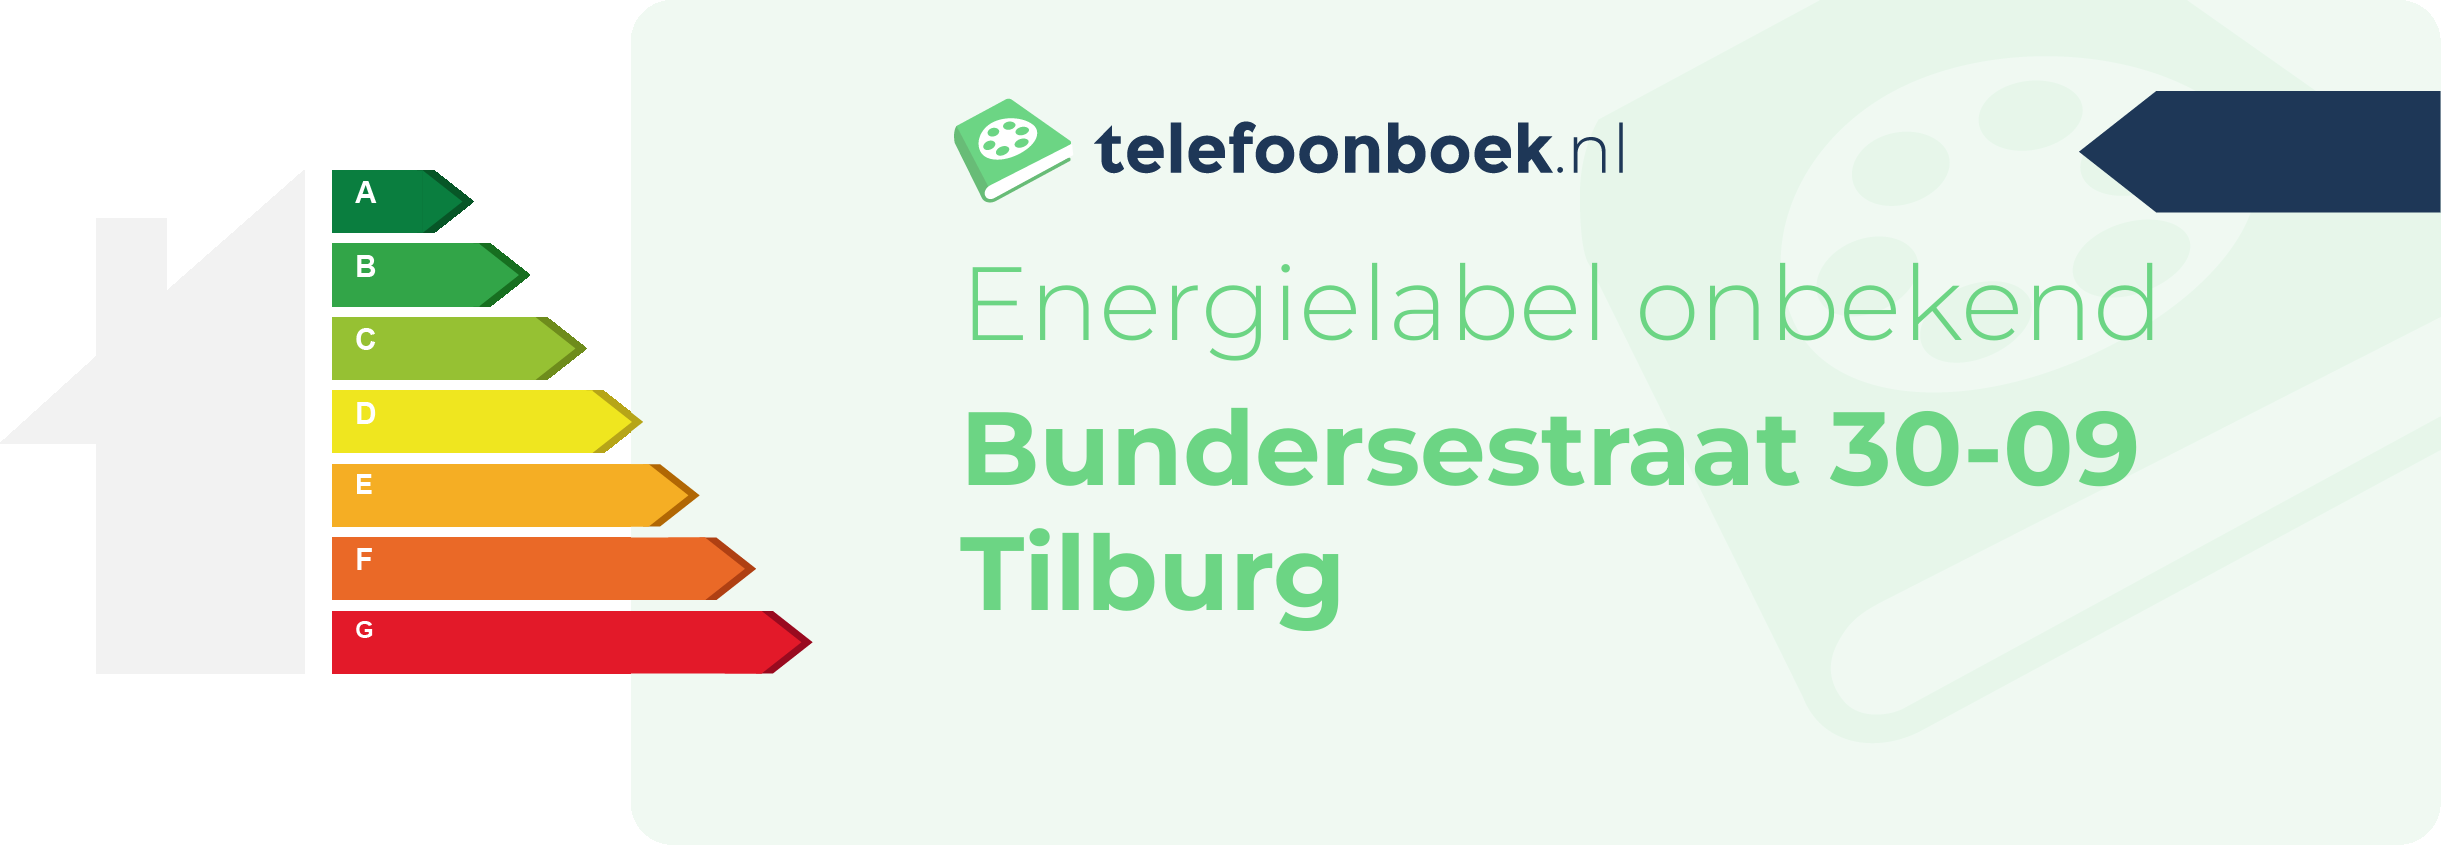 Energielabel Bundersestraat 30-09 Tilburg